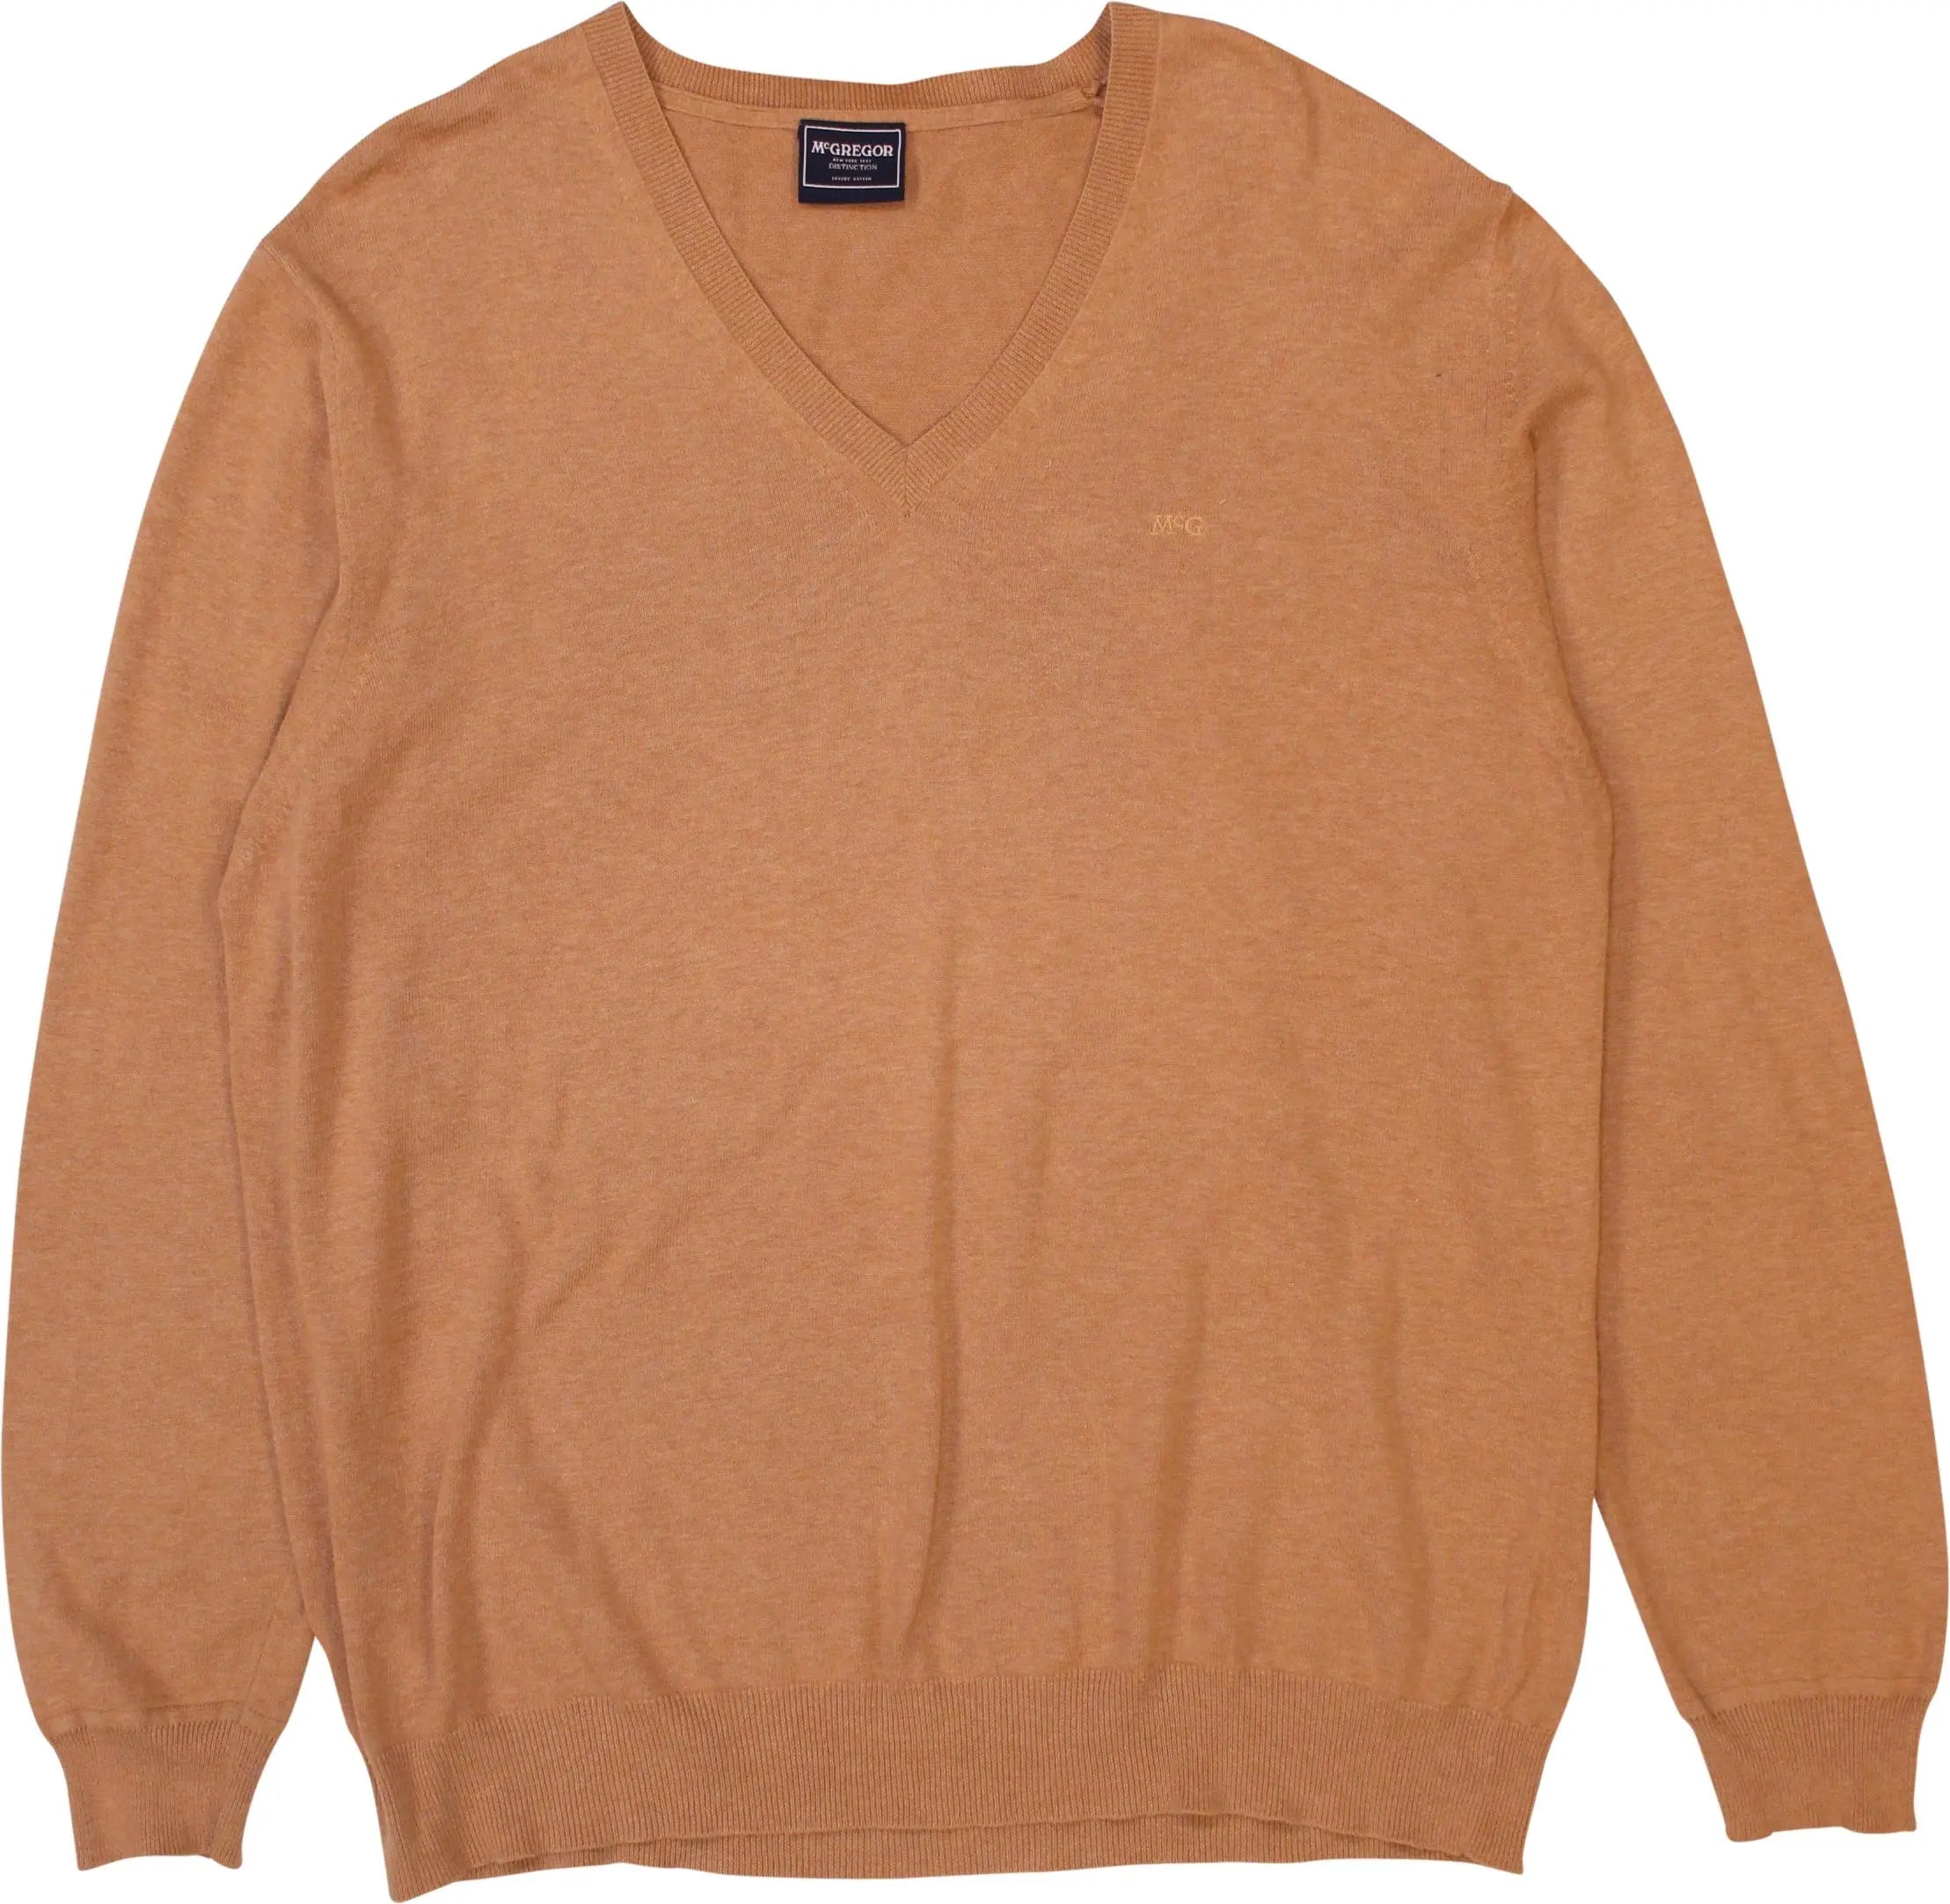 McGregor - V-Neck Sweater- ThriftTale.com - Vintage and second handclothing